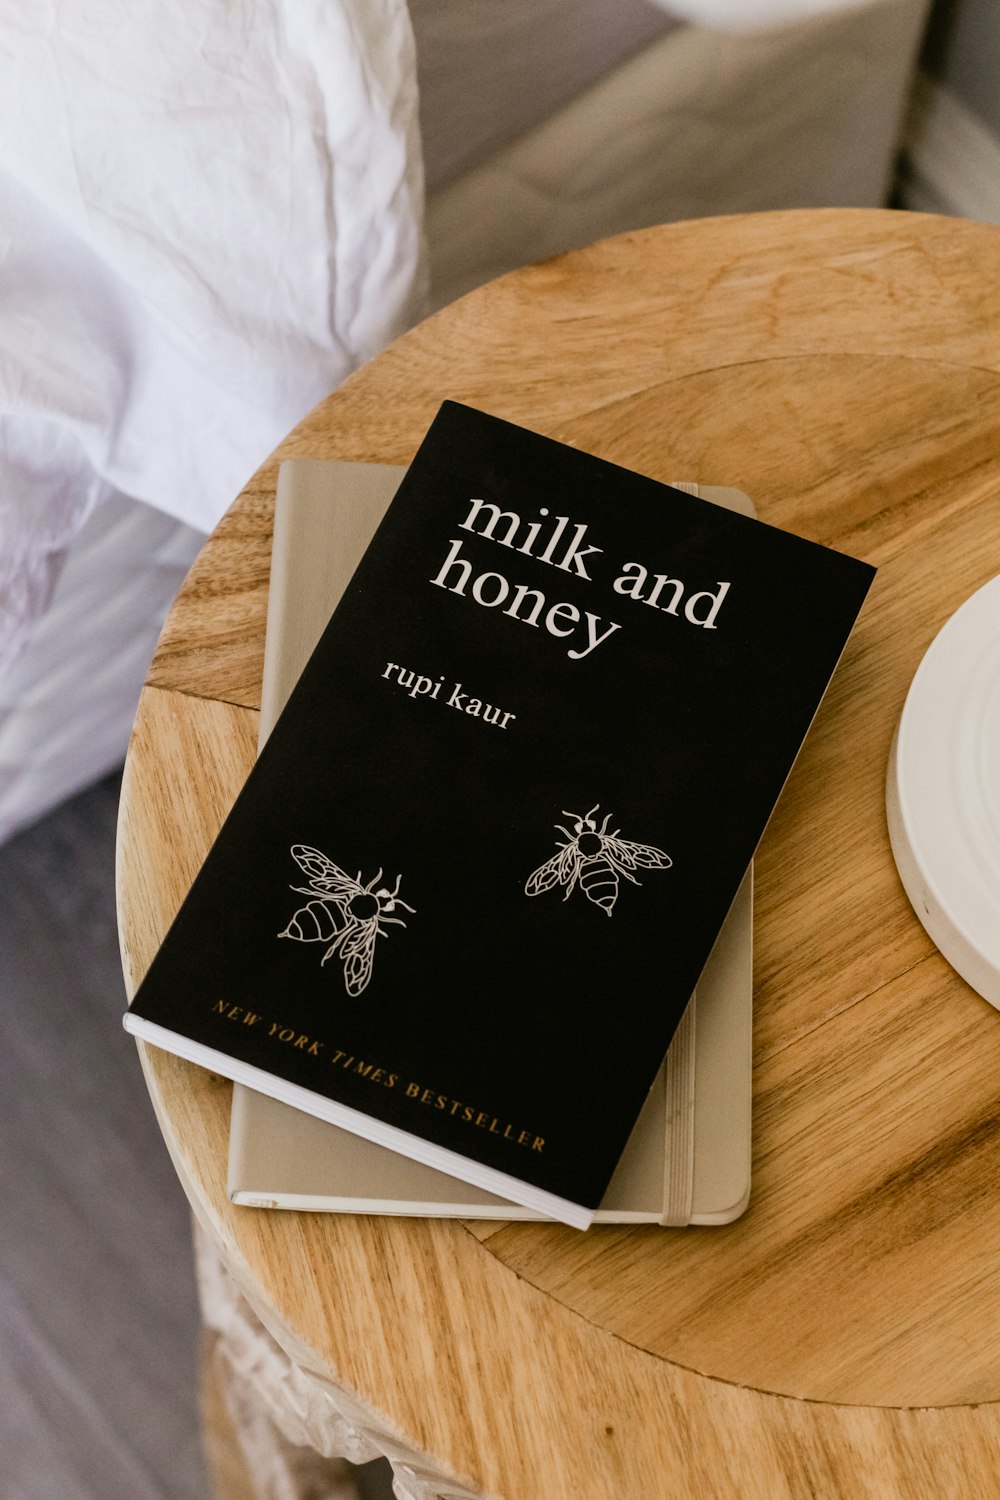 Libro Milk and Honey de Rupi Kaur sobre una mesa auxiliar